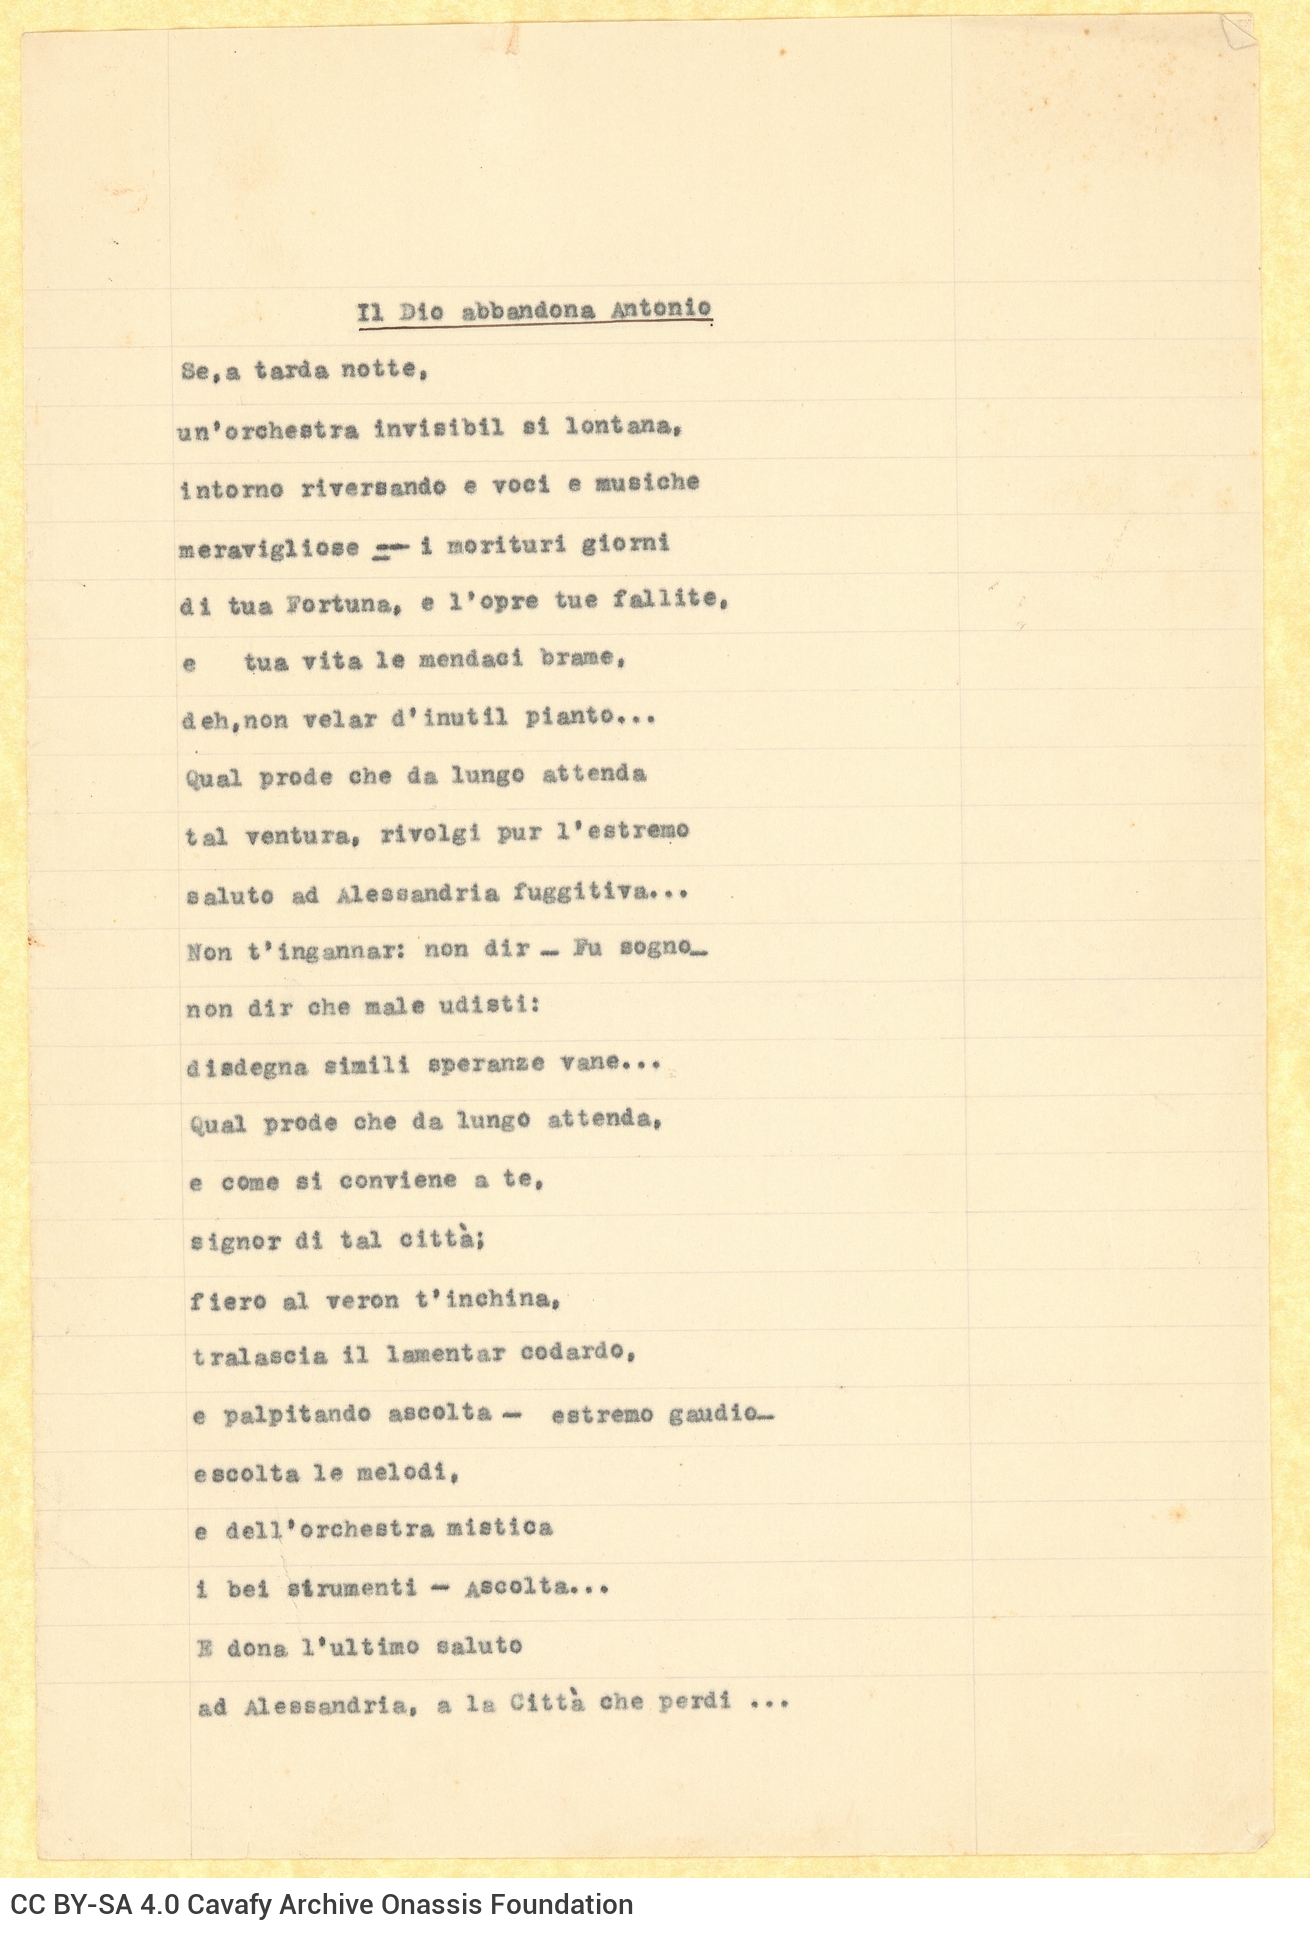 Δακτυλόγραφες μεταφράσεις ποιημάτων του Καβάφη στα ιταλικά. Τα ποιή